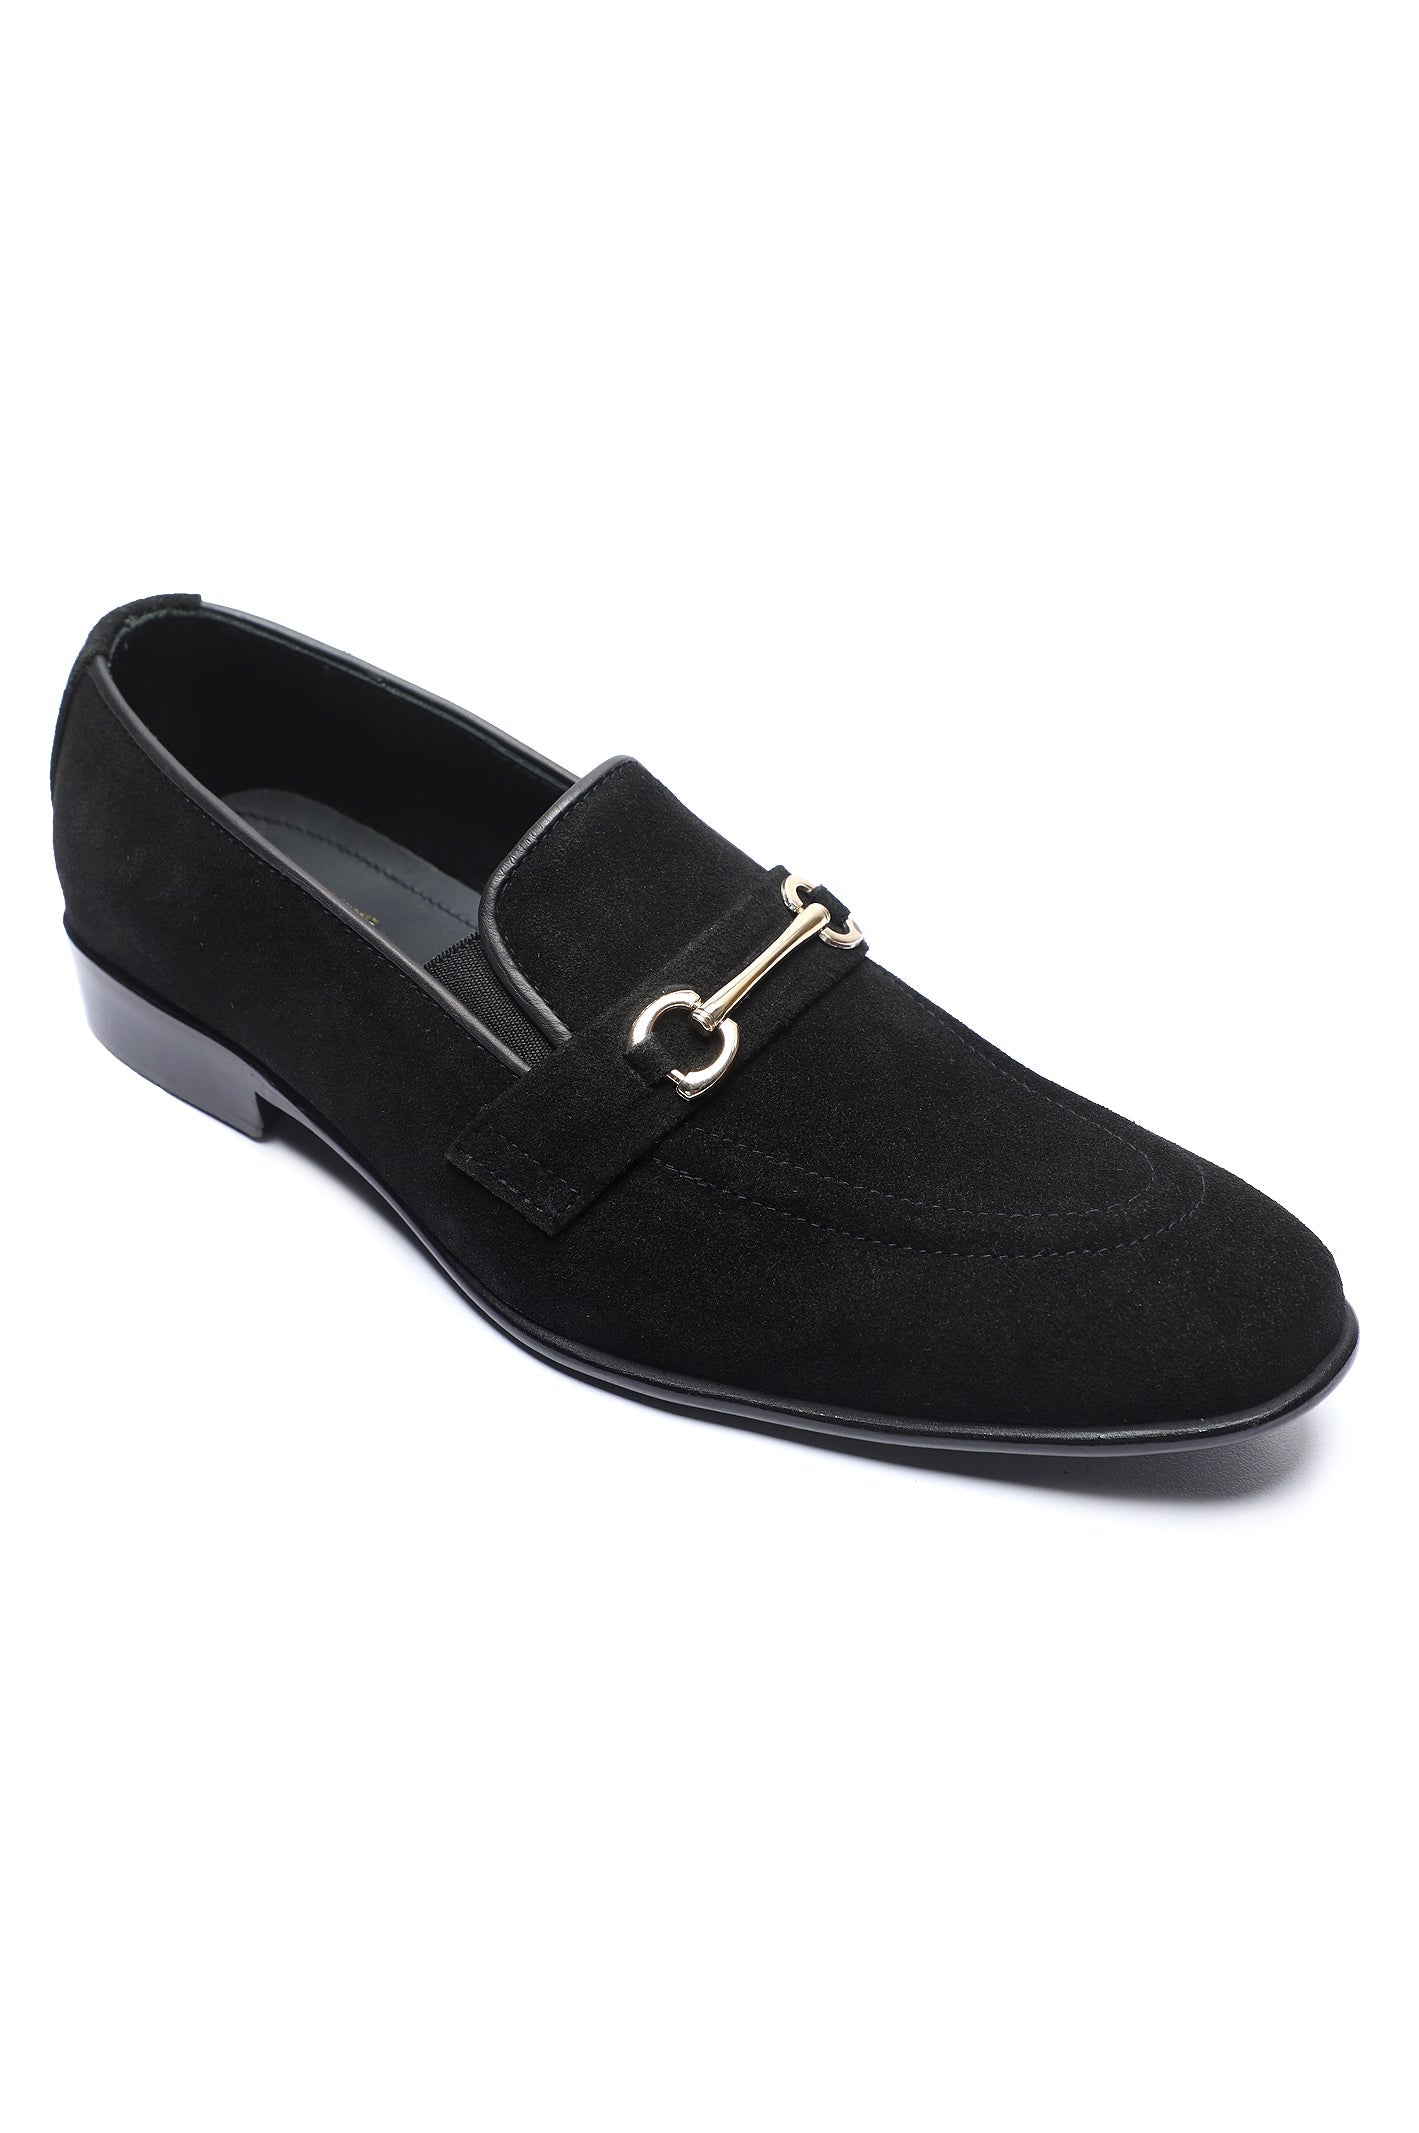 Formal Shoes For Men SKU: SMF-0190-BLACK - Diners